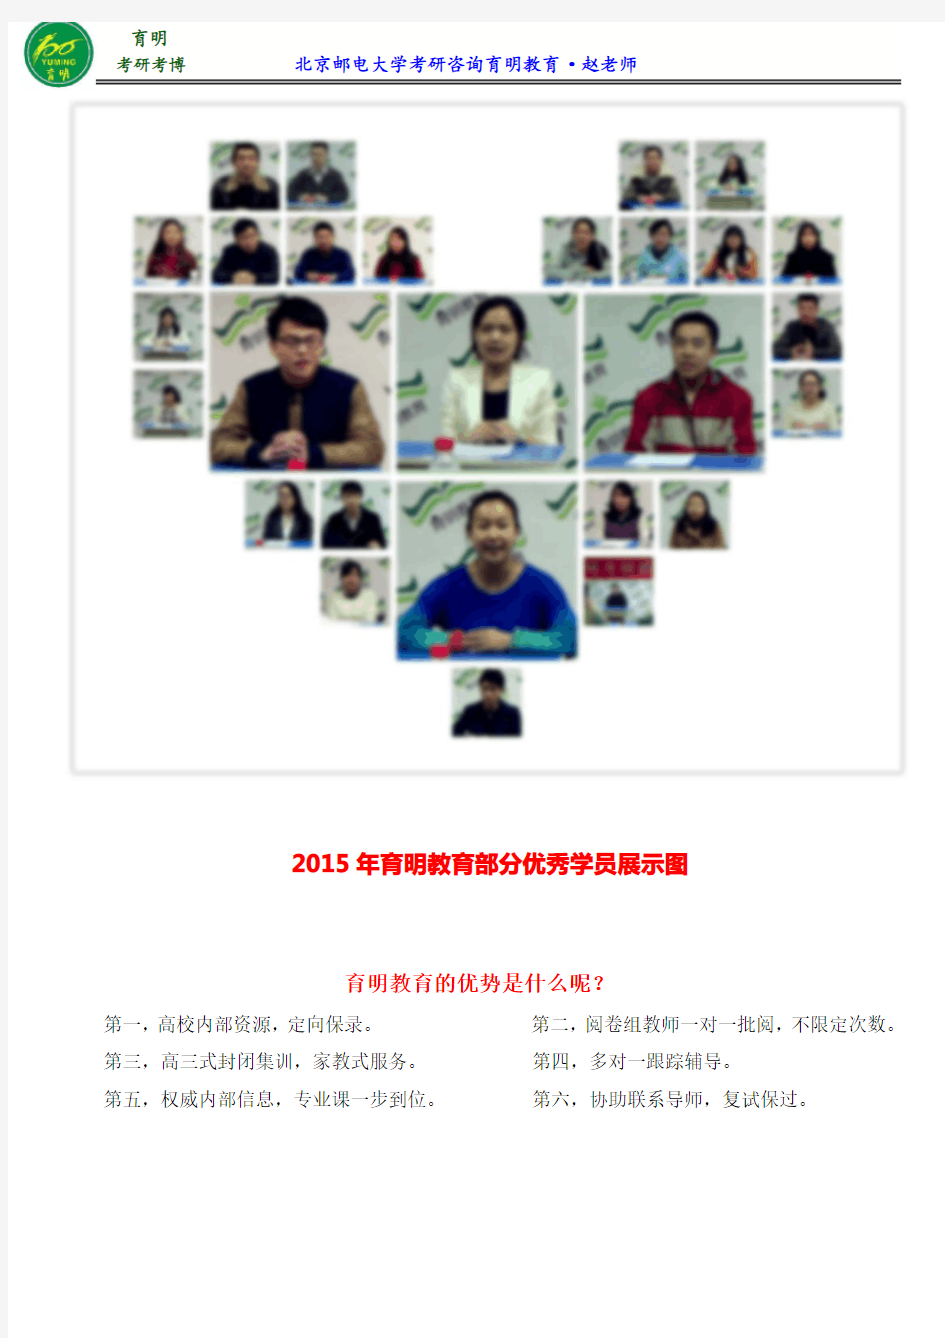 2017北京邮电大学公共管理专业考研参考书、参考书笔记、考研笔记、考研笔记、《公共管理学》笔记